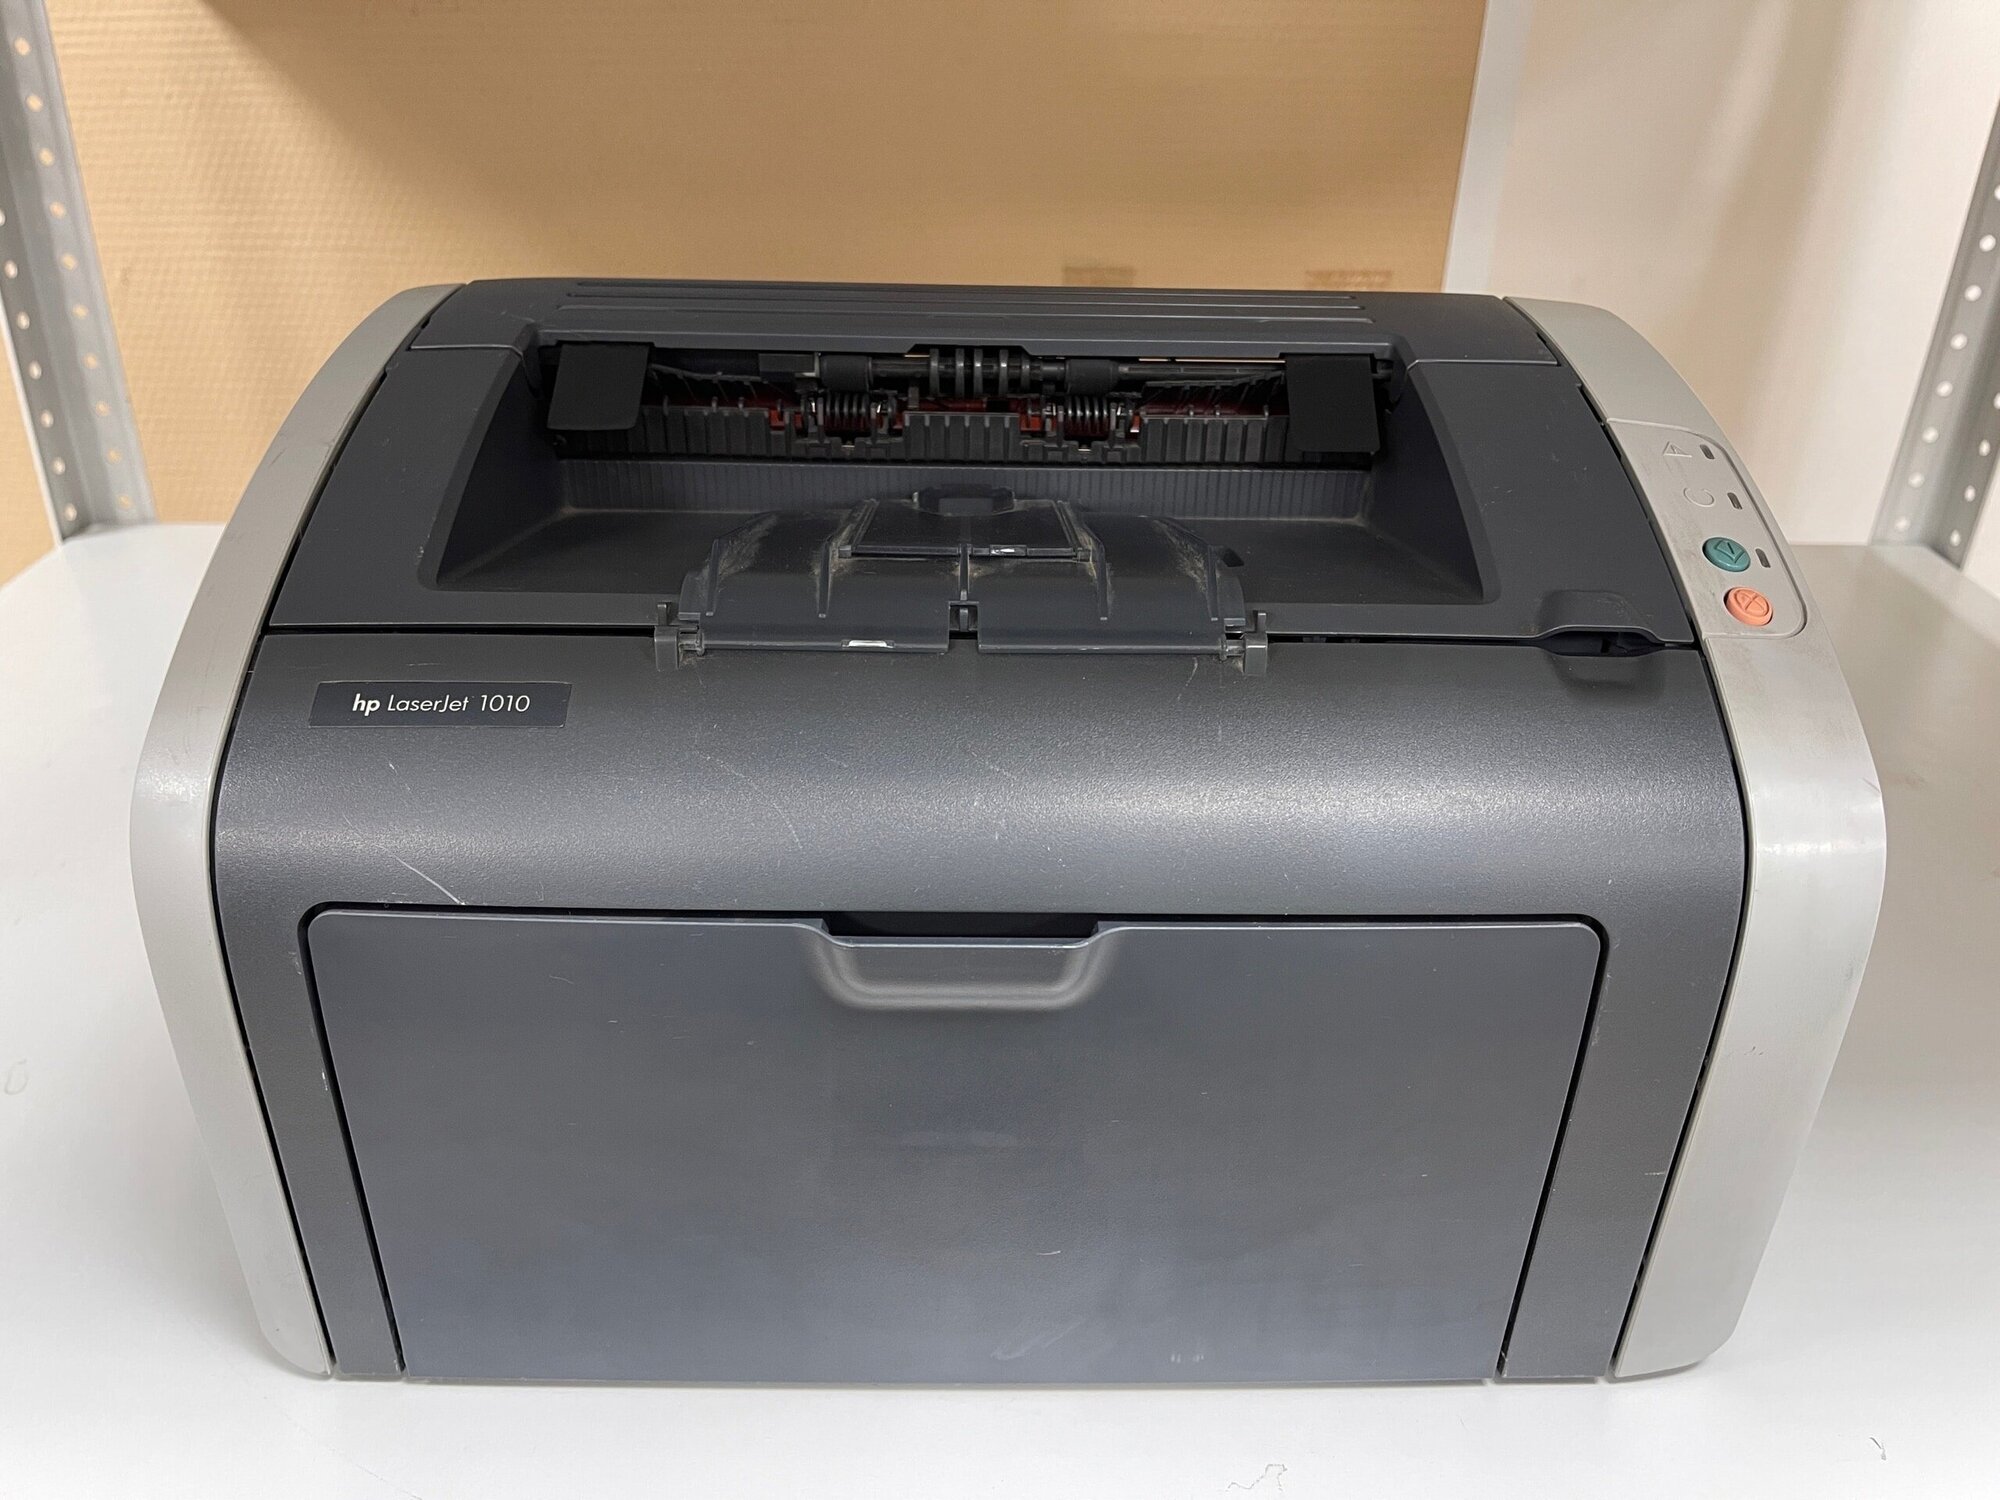 Принтер лазерный HP LaserJet 1010, ч/б, А4